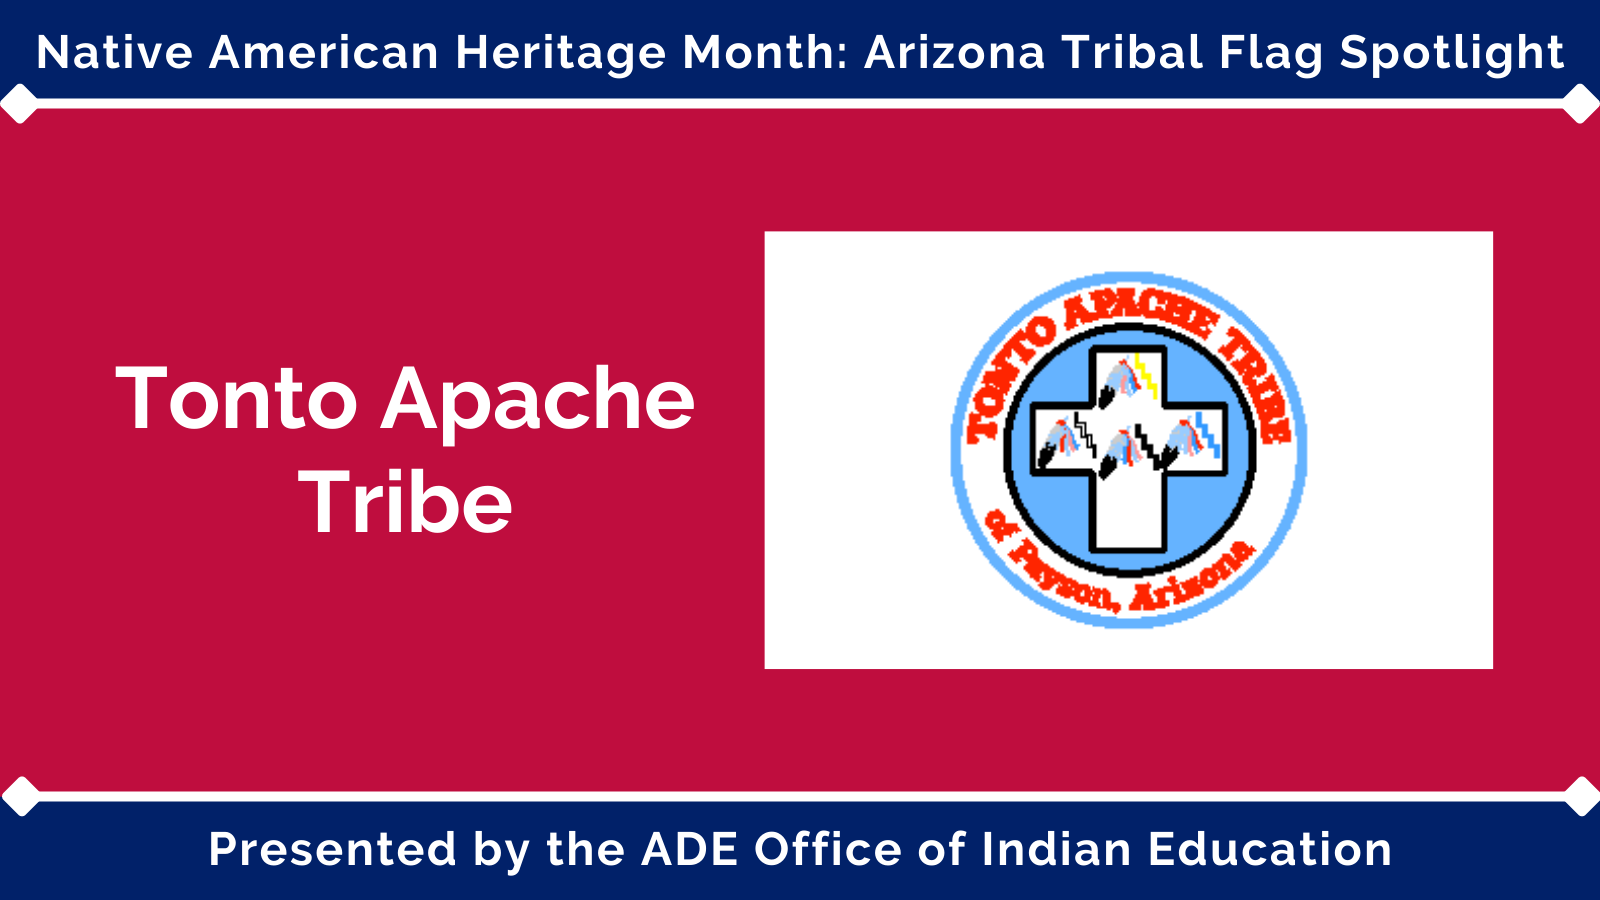 Tonto Apache Tribe